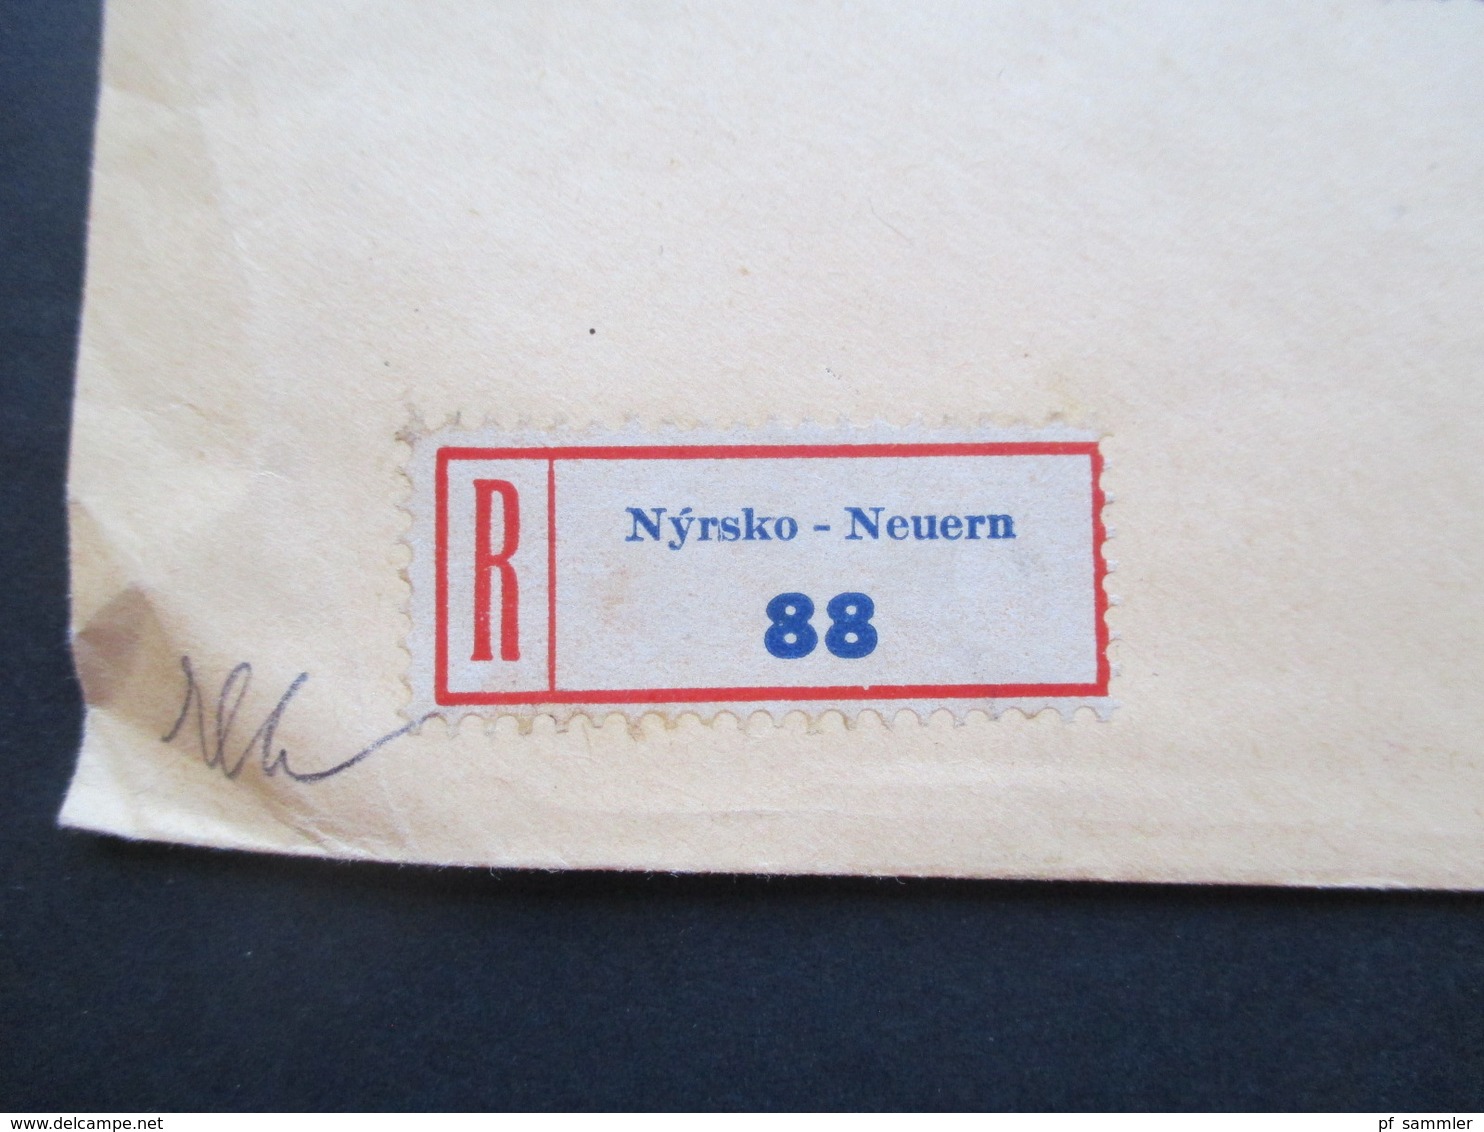 CSSR / Sudetenland 1934 Beleg Advokat Leopold Goldbach Neuern Zweisprachiger Stempel Nyrsko / Neuern Einschreiben!! - Lettres & Documents